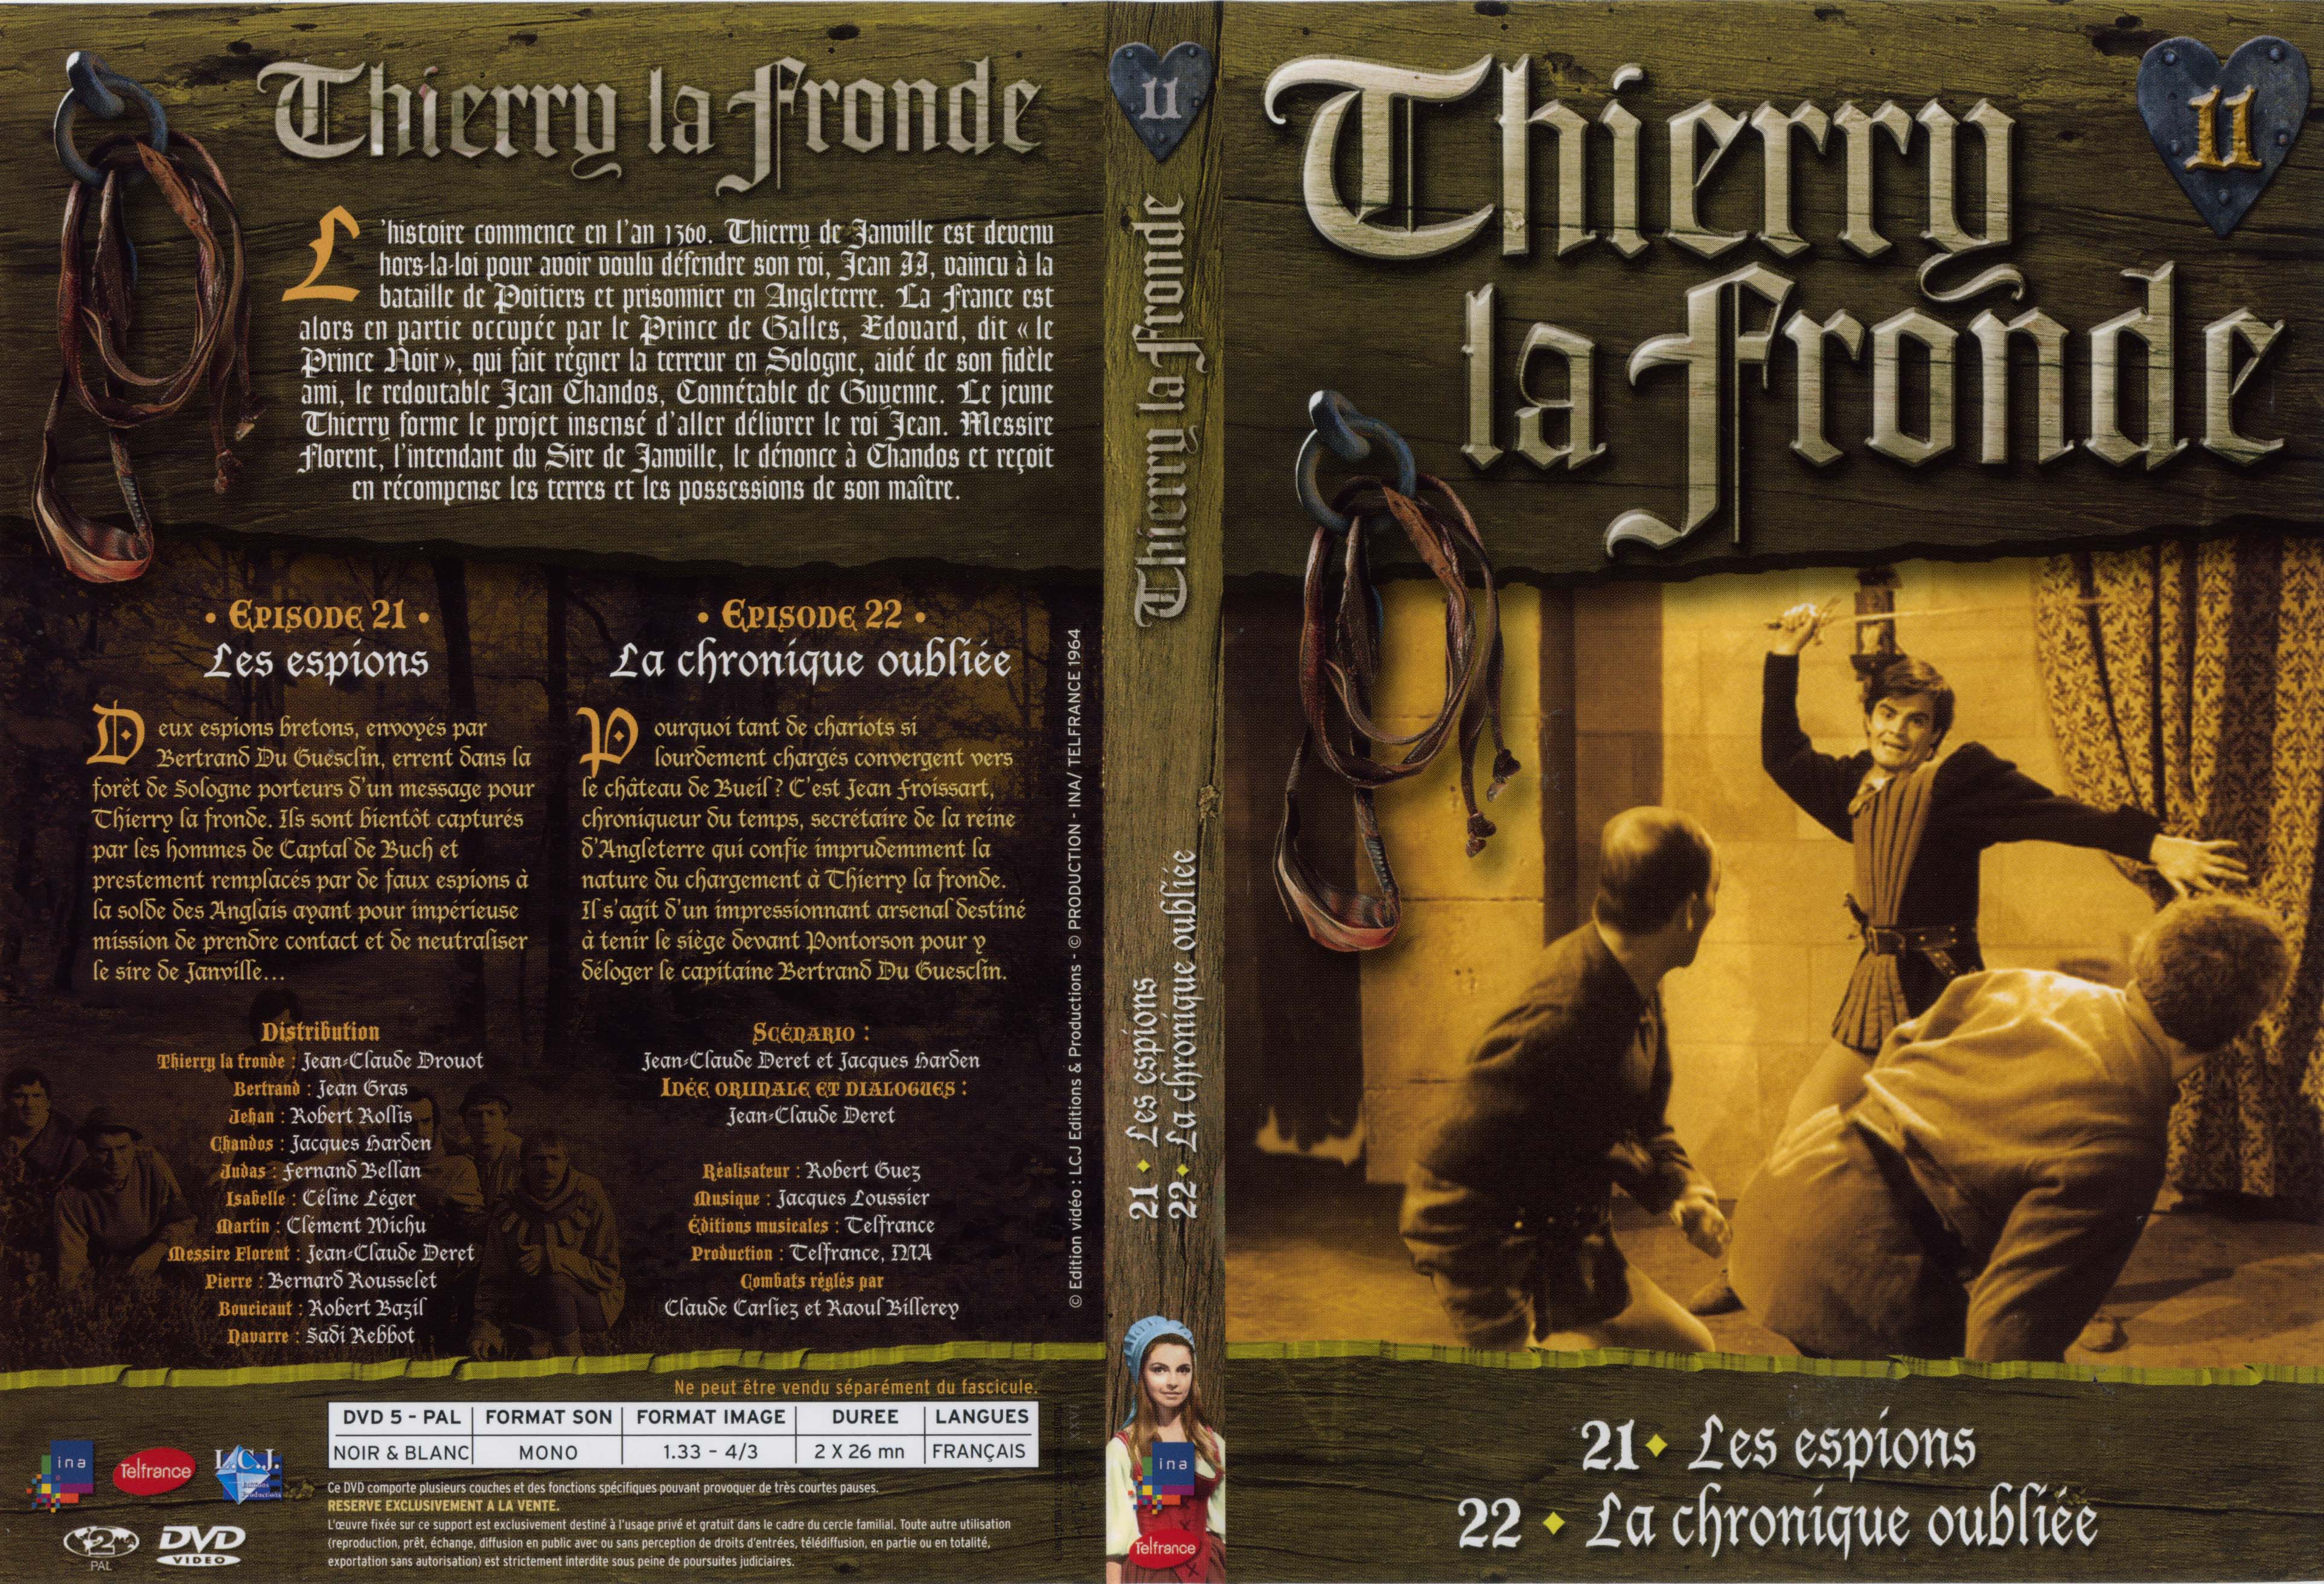 Jaquette DVD Thierry la Fronde vol 11